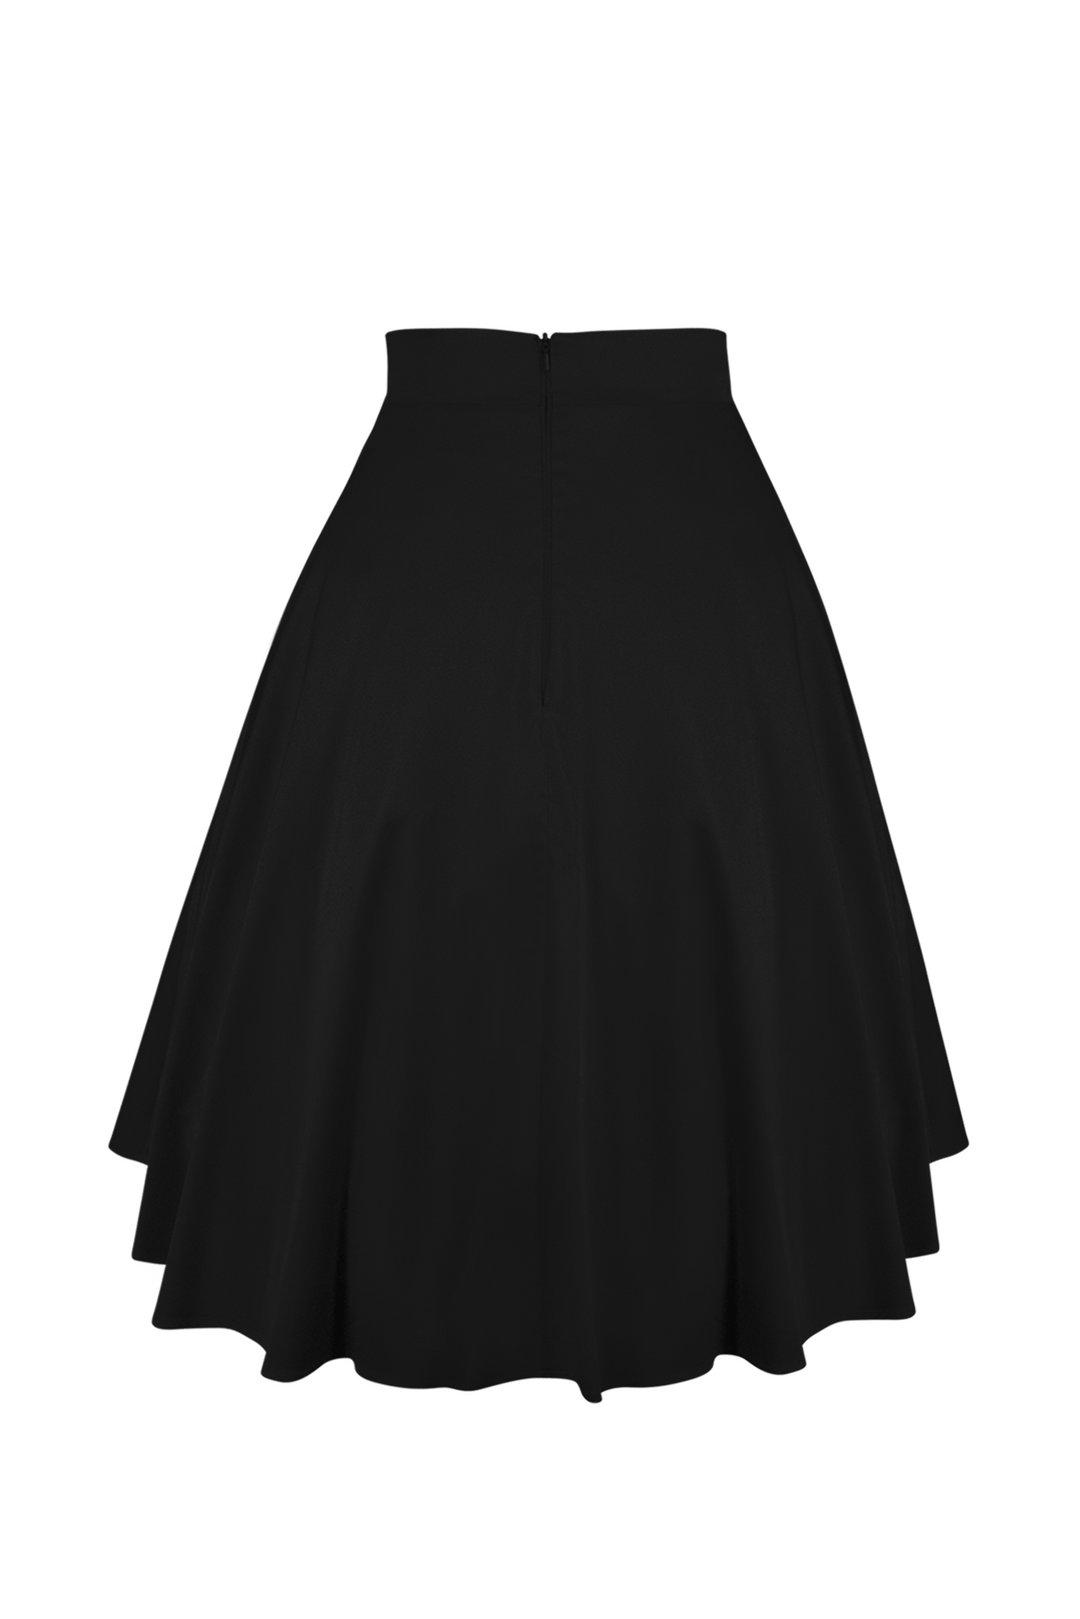 Tea Rose Classic Full Skirt (Black) - Kitten D'Amour